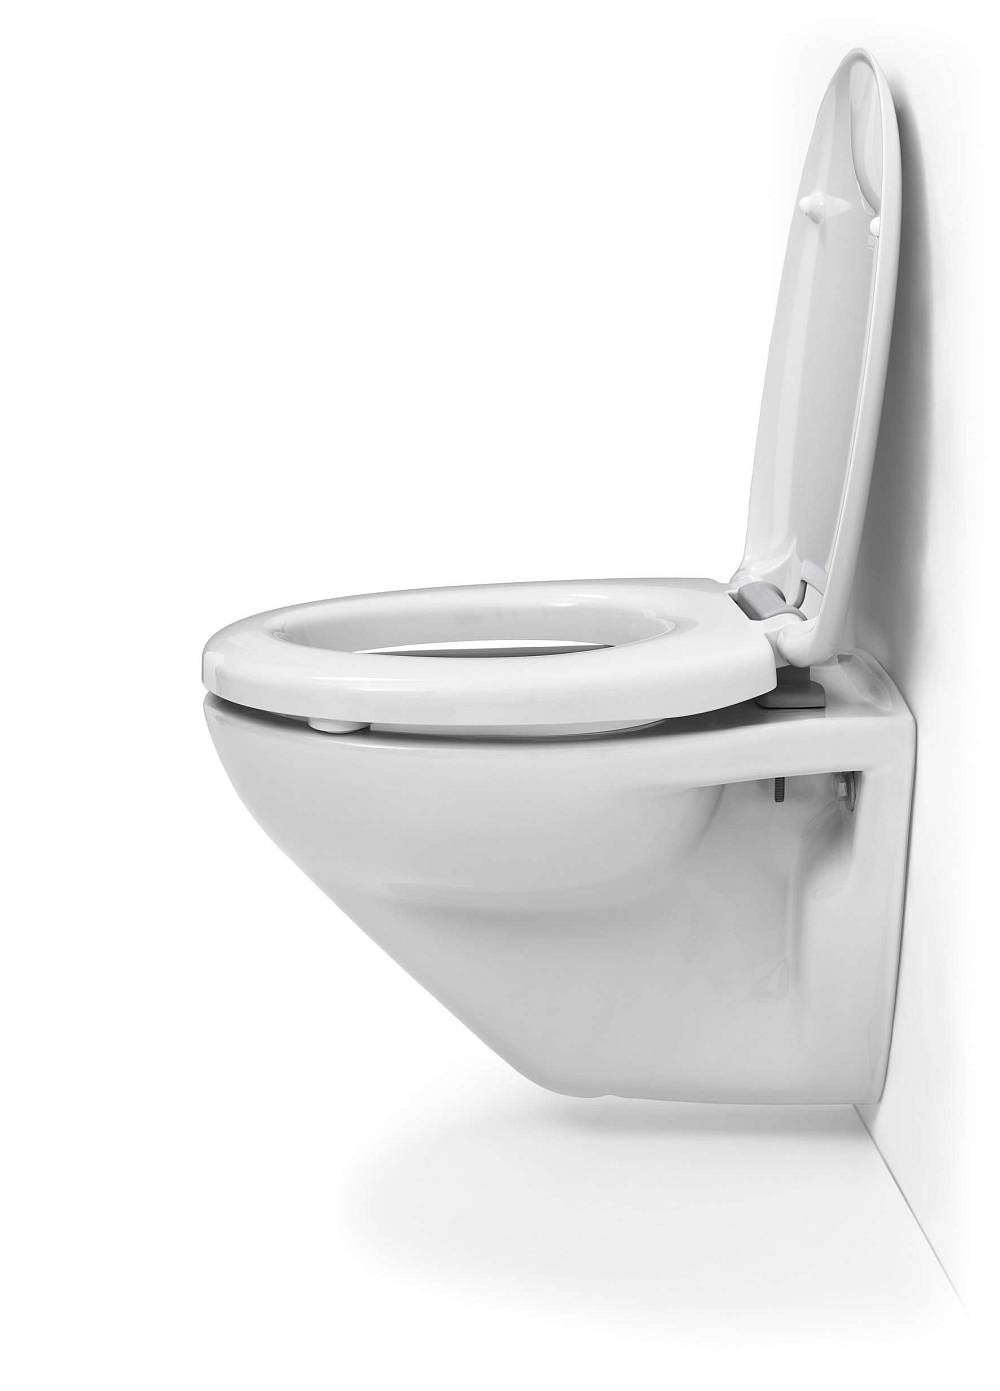 ANFF Toilet Seat Siège De Toilette Universel O Type Anti-bactérien en Résine épaississante Couleur Transparent à Dégagement Rapide Soft Close Charnière Lente,A 